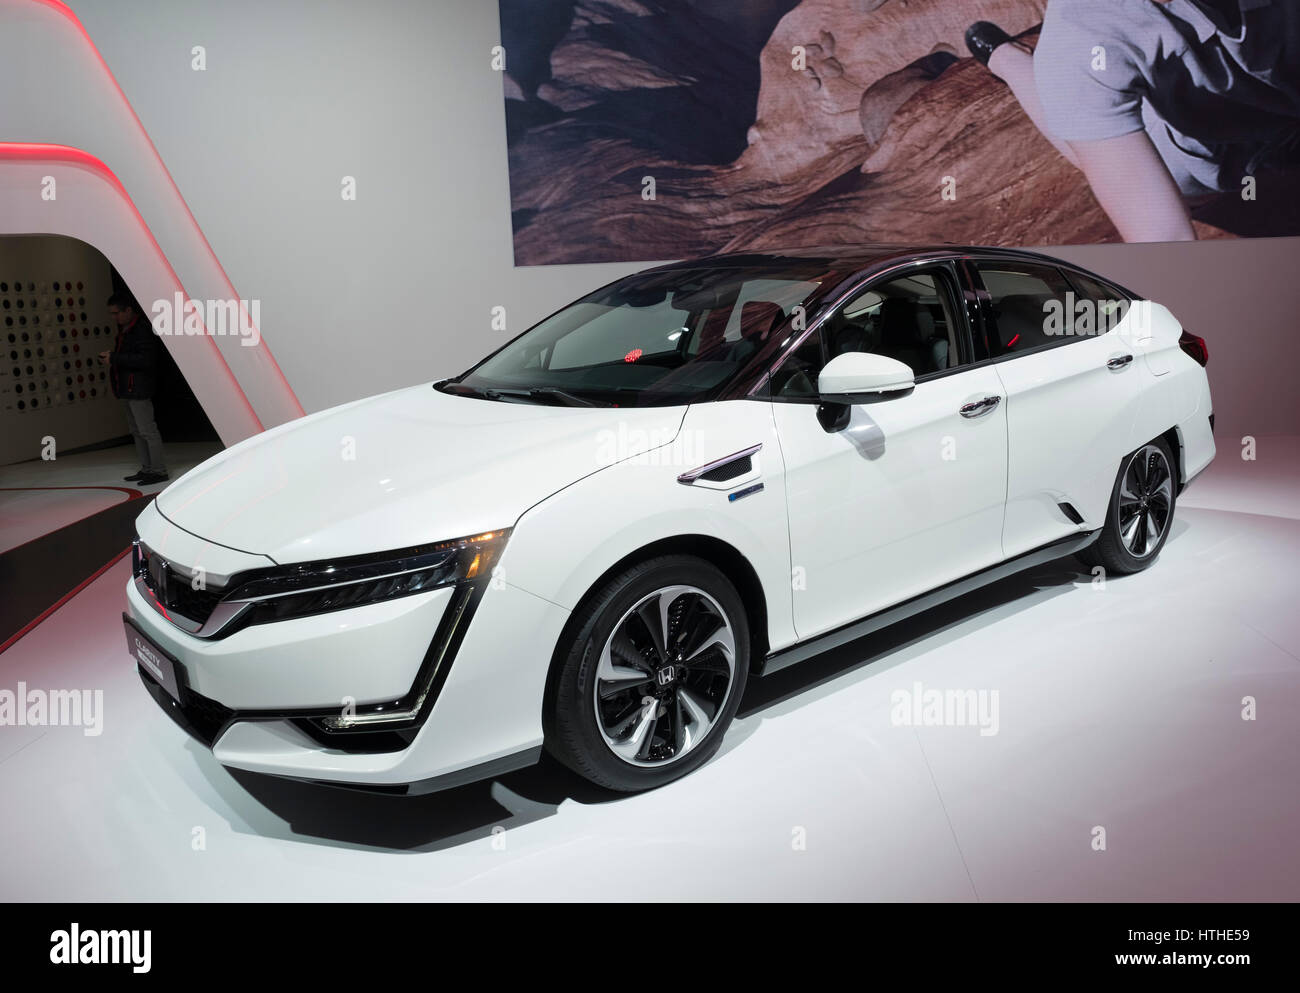 Honda Clarity pile à hydrogène powered voiture au 87e Salon International de l'Automobile à Genève Suisse 2017 Banque D'Images